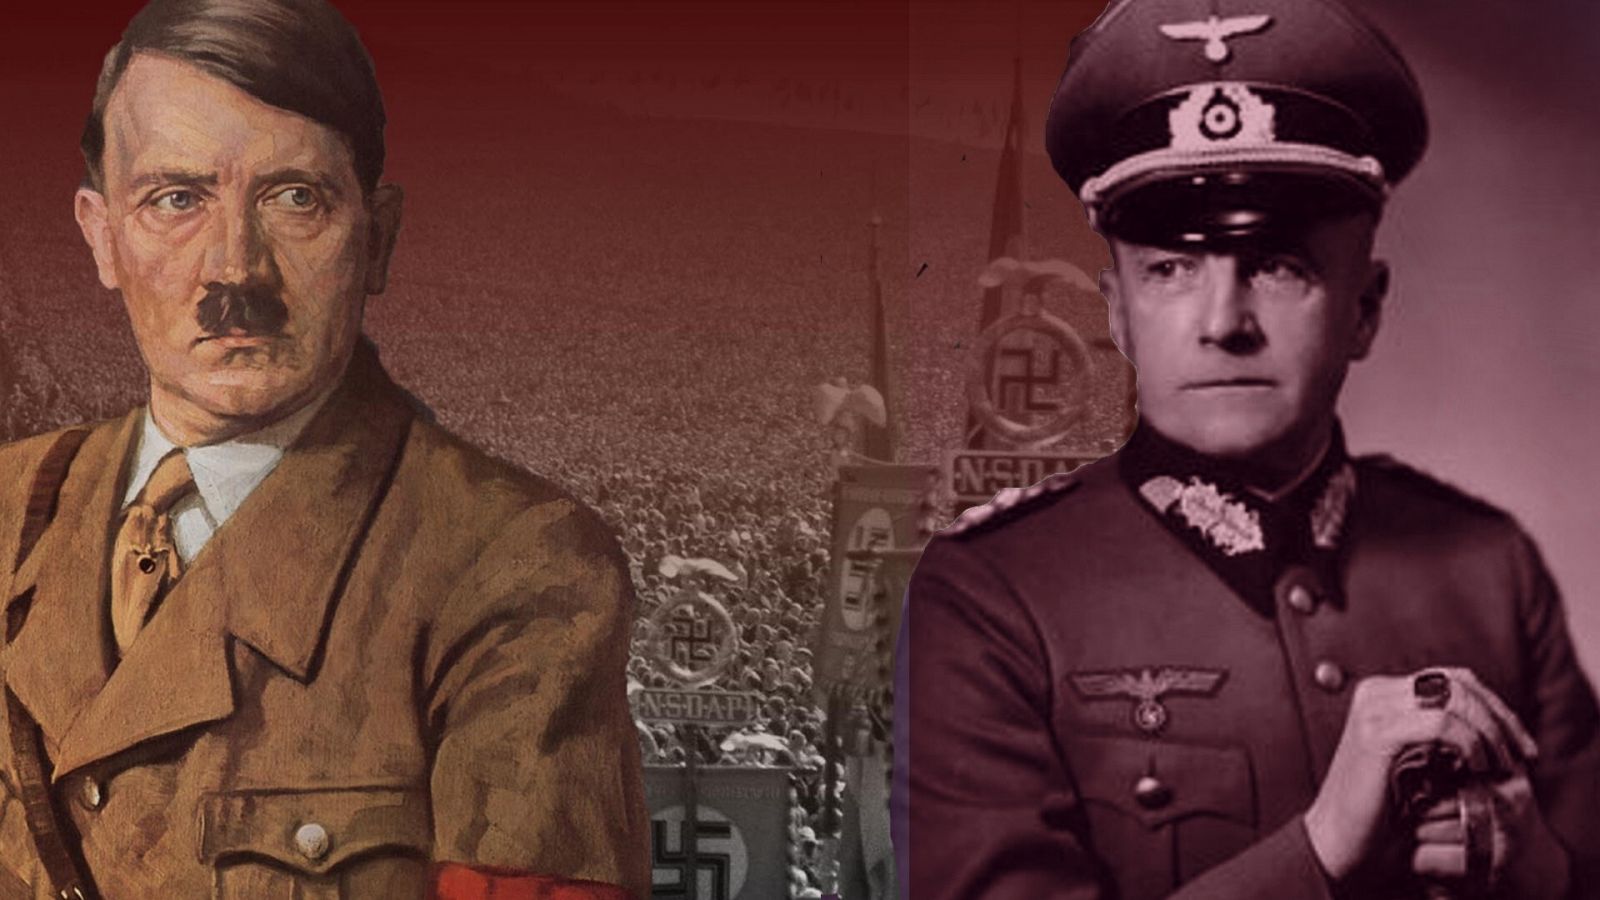 La locura expansionista de Hitler cambió la vida de Walther Von Brauchitsch, veterano de la I Guerra Mundial